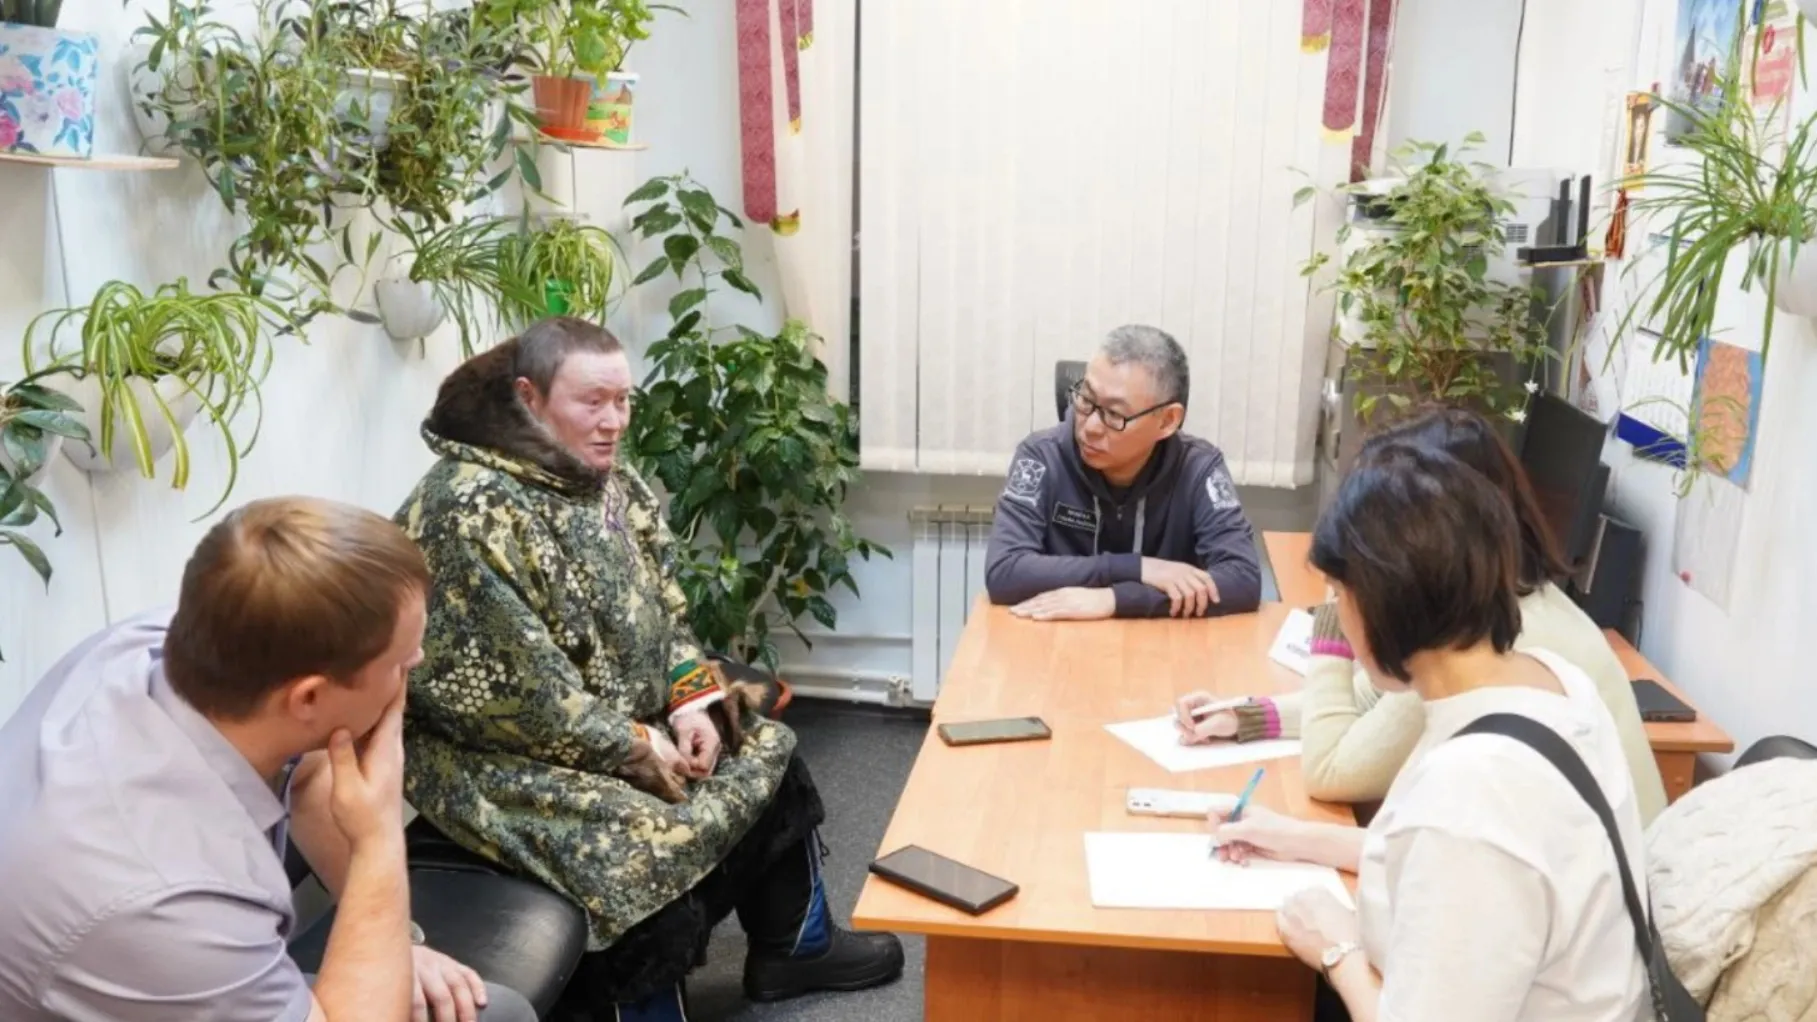 Глава Тазовского района провел личный прием жителей отдаленных сел. В работу принято более полусотни обращений. Фото: t.me/Ugai_VK